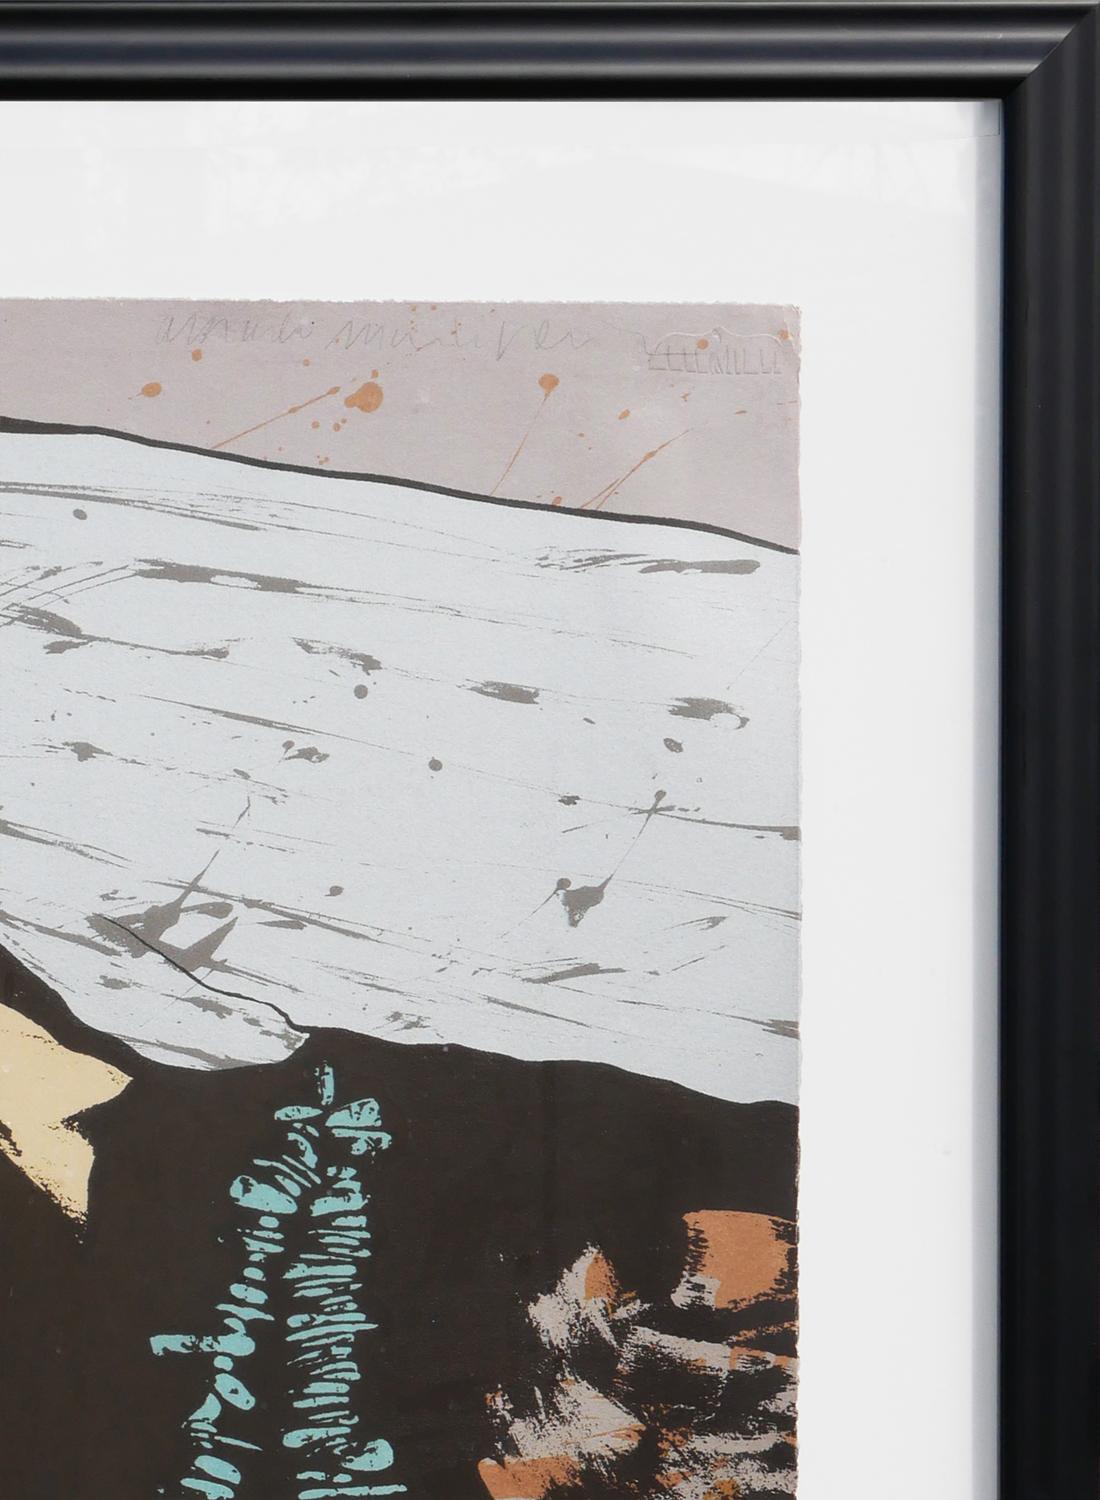 Impression figurative abstraite sarcelle et marron de l'artiste chicano Amado Maurilio Peña JR. Cette pièce représente une femme indigène âgée aux longs cheveux blancs, vue de profil, portant un vêtement beige à motifs et un collier de perles